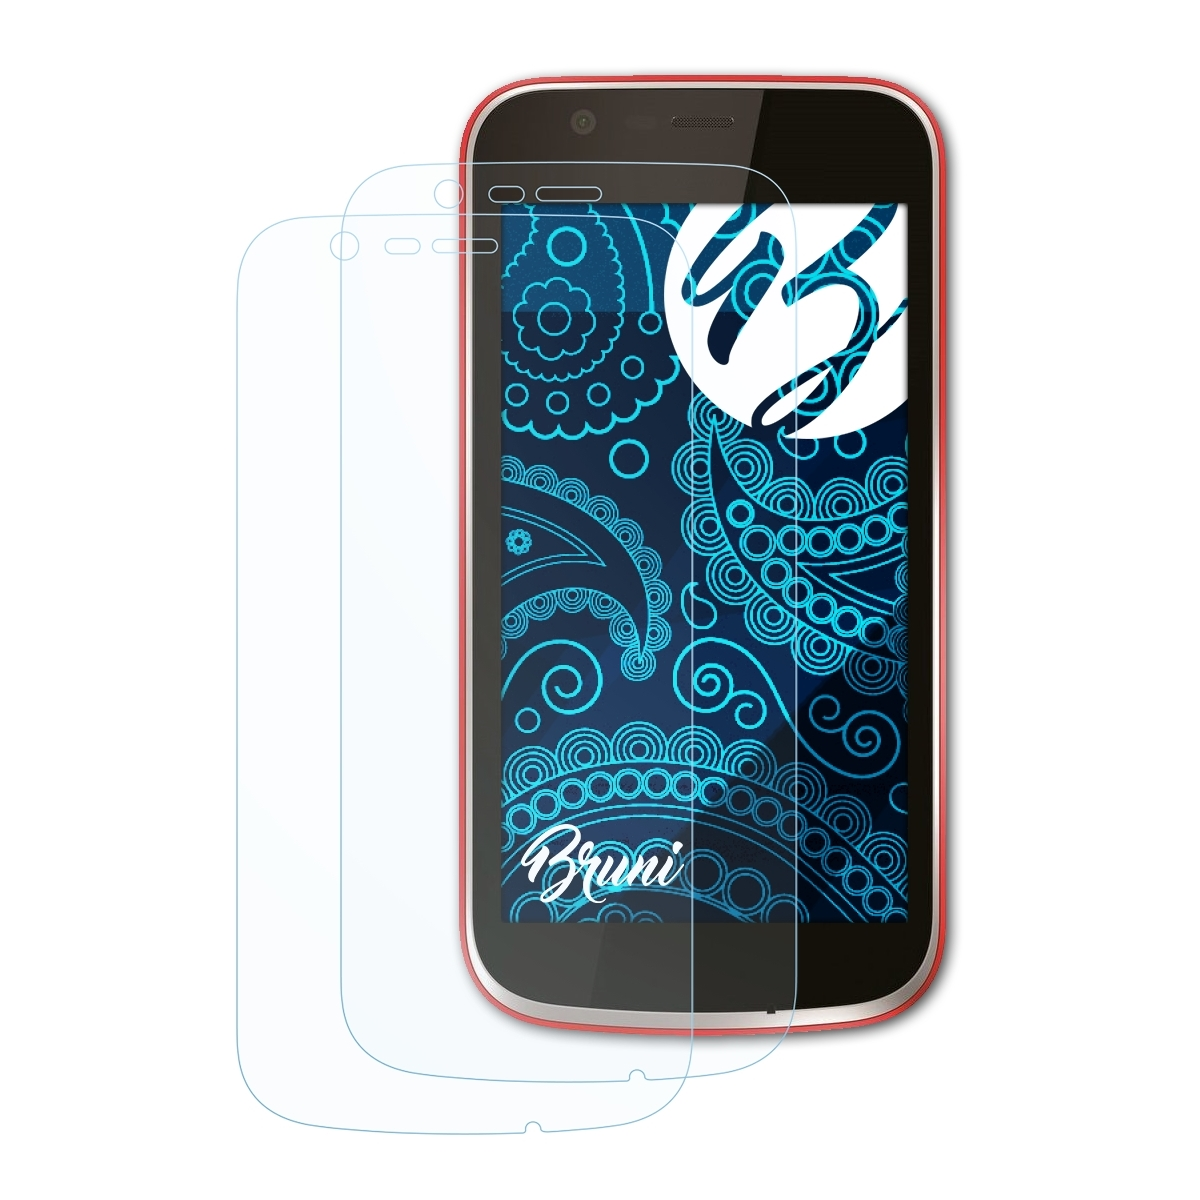 Schutzfolie(für 1) Nokia BRUNI 2x Basics-Clear